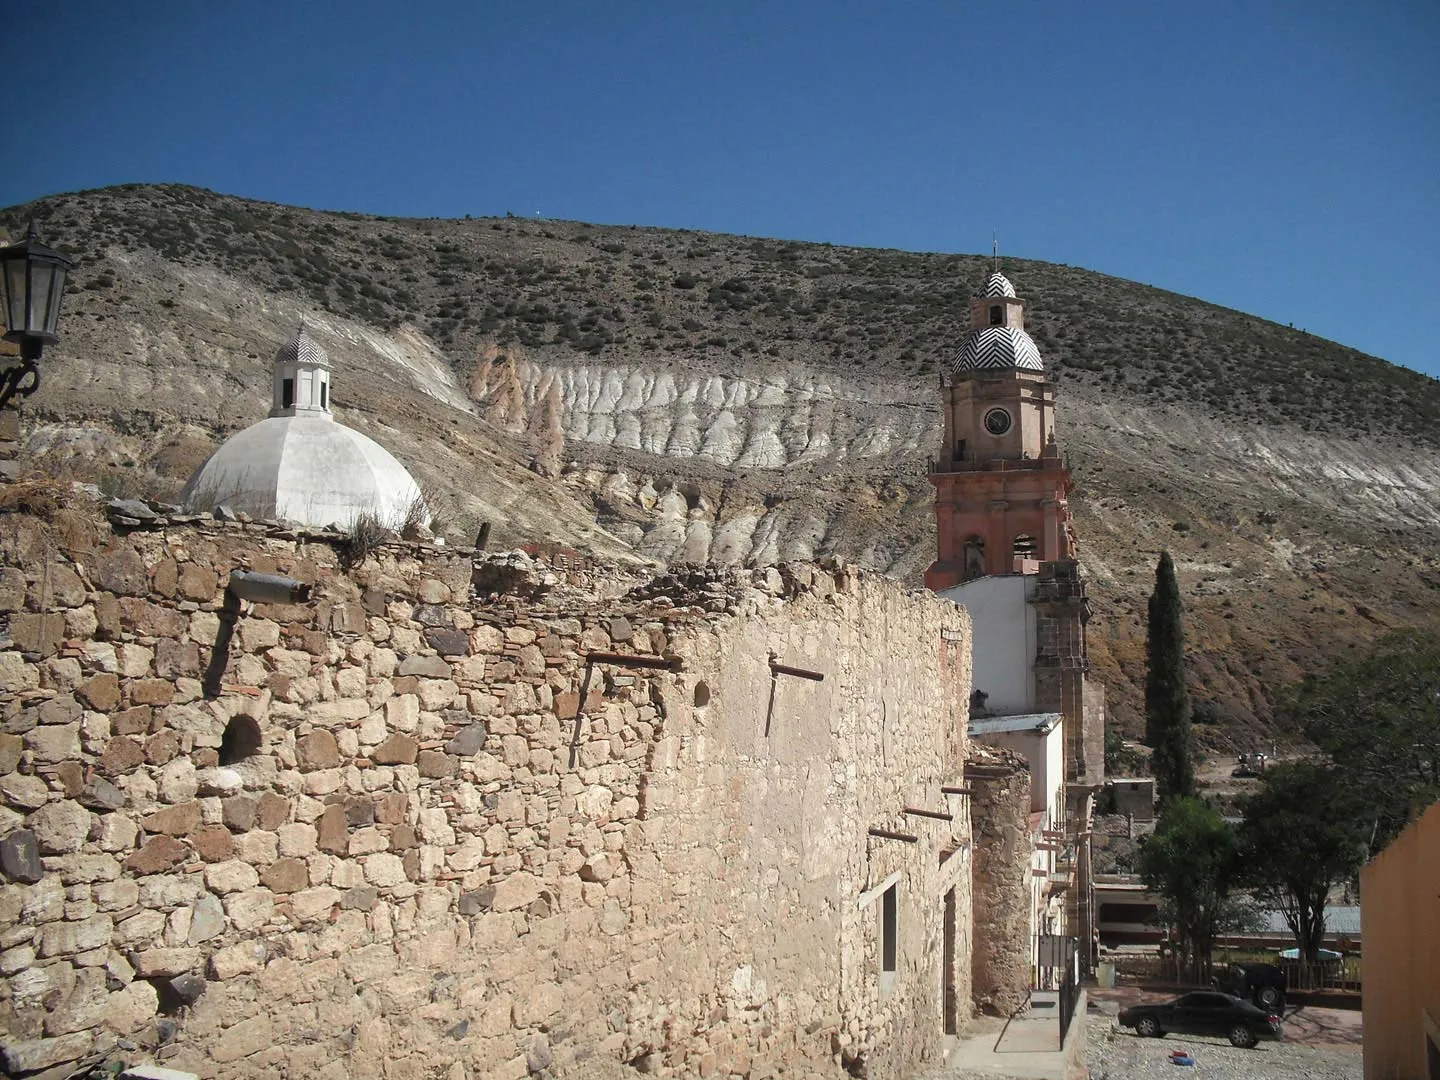 Nota sobre Conociendo la belleza de Real de Catorce, San Luis Potosí